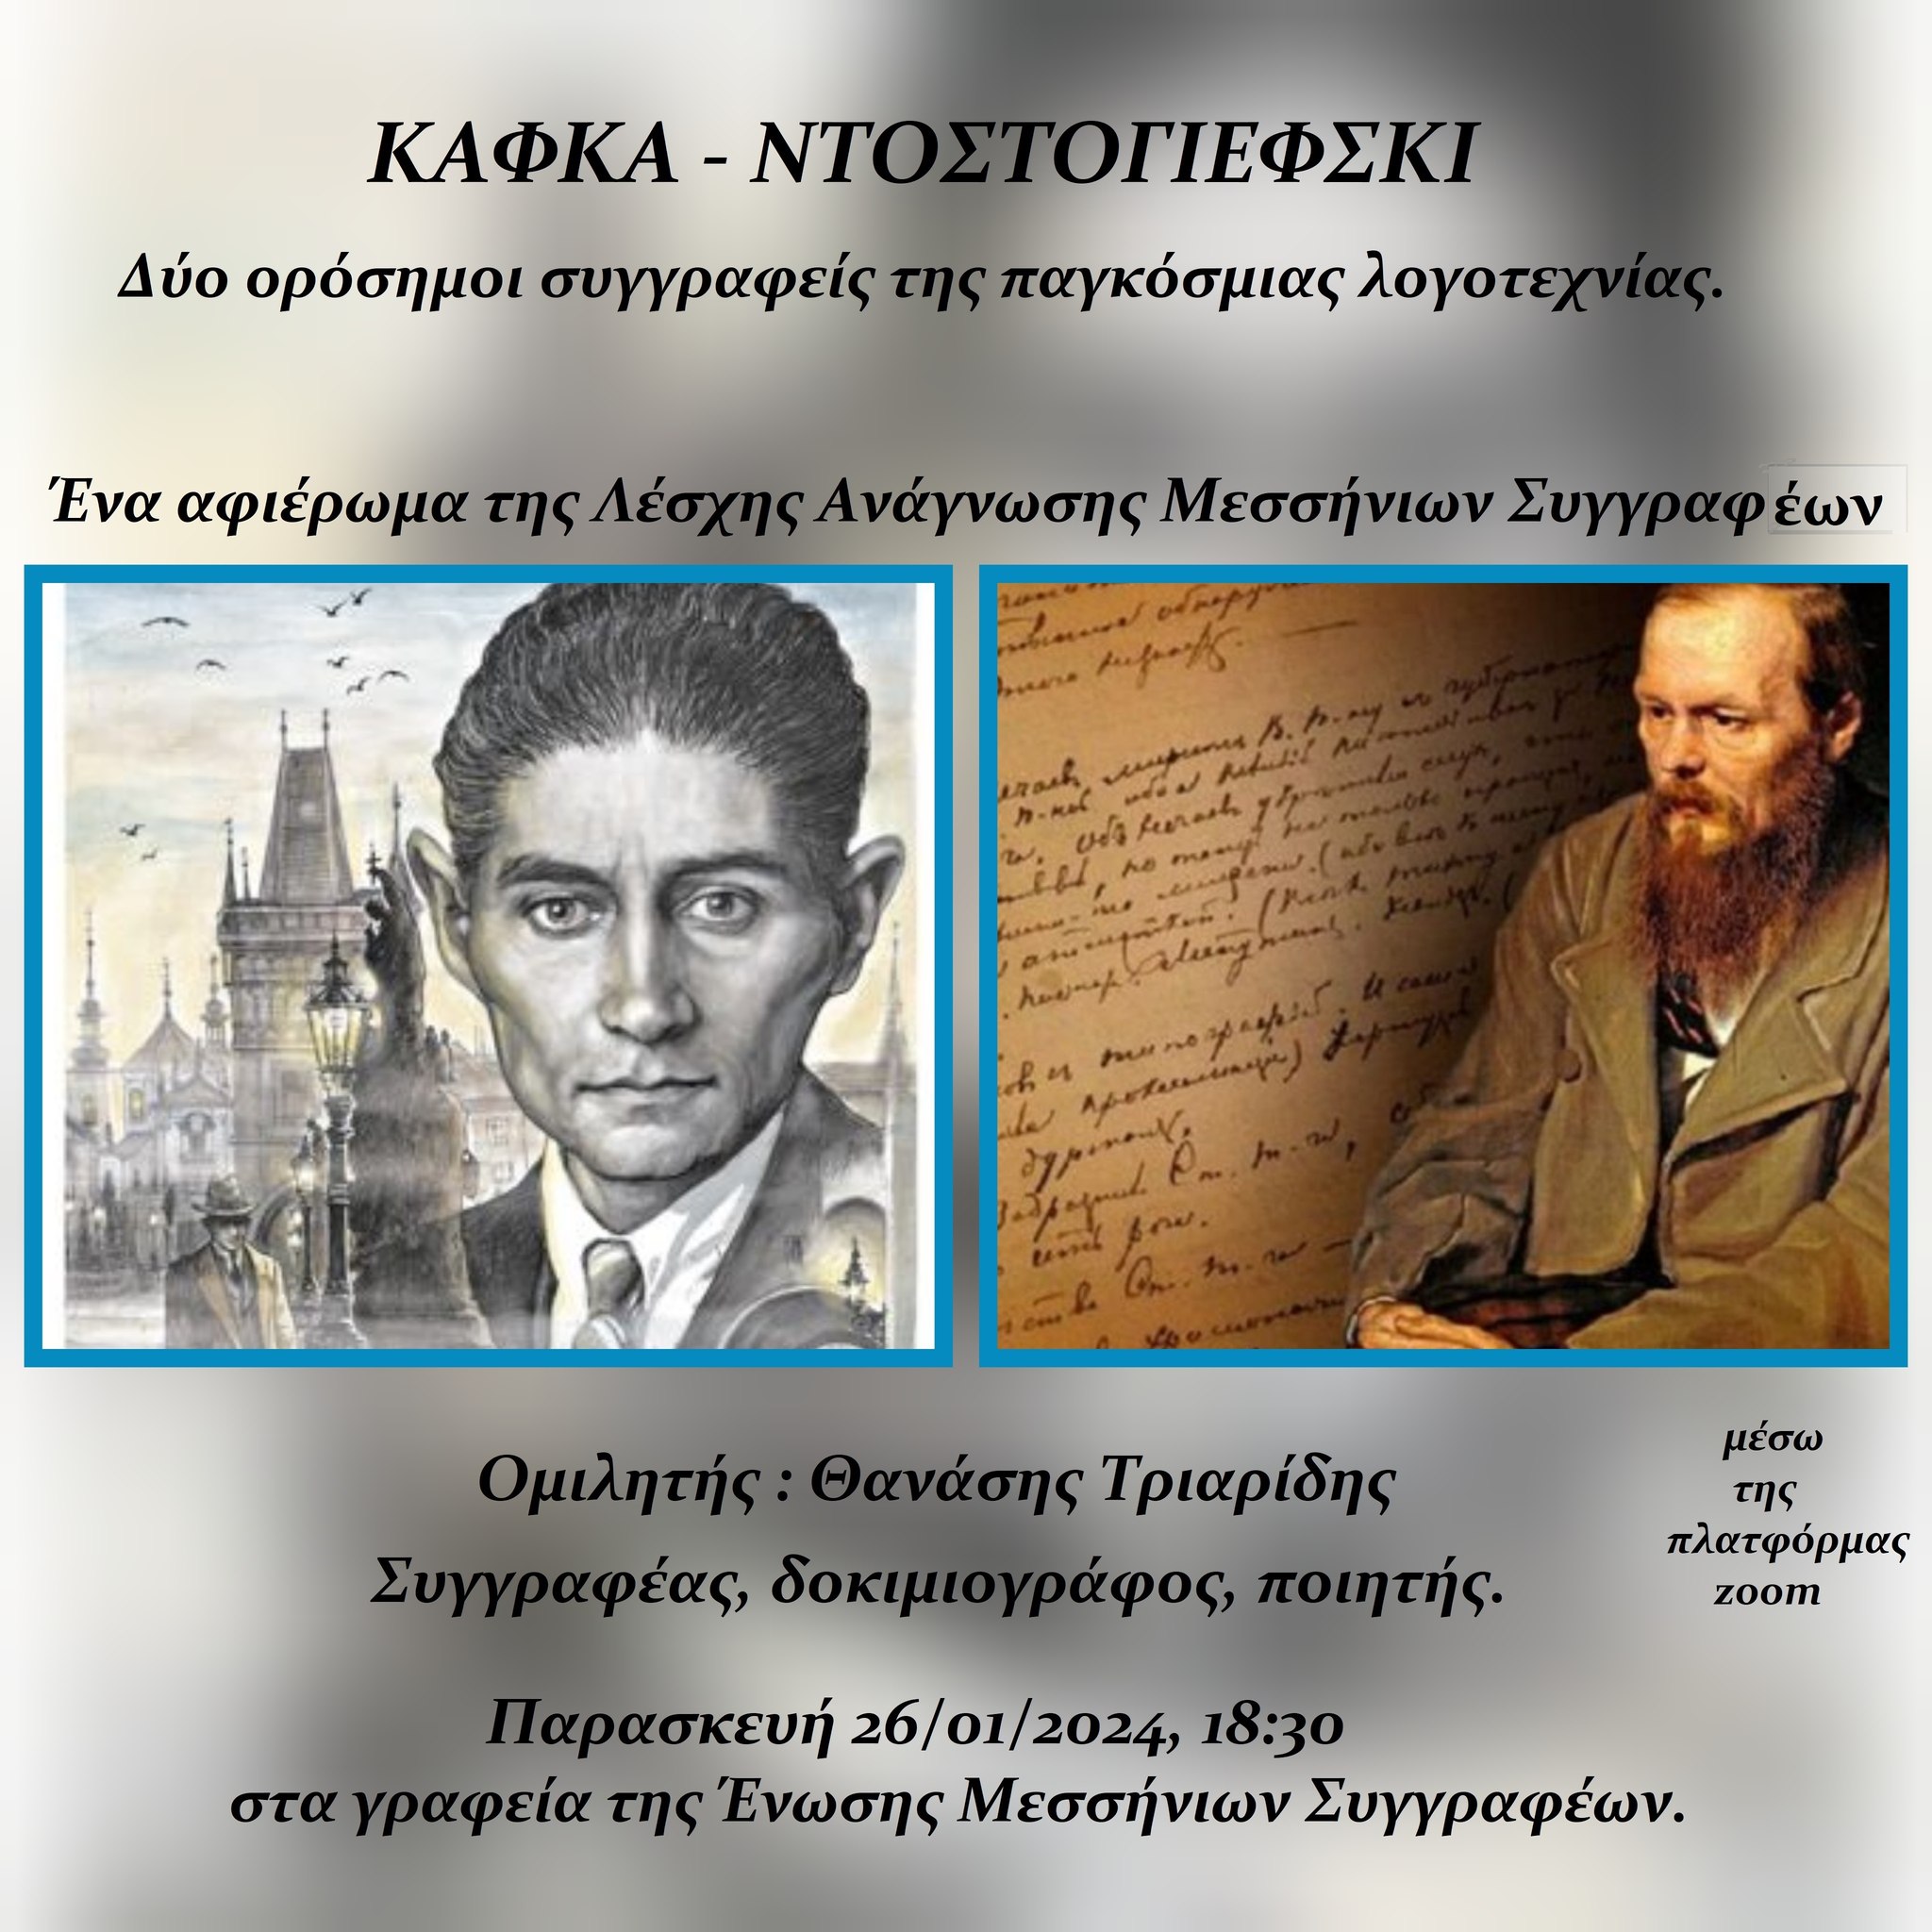 "Κάφκα - Ντοστογιέφσκι" ένα αφιέρωμα από τη Λέσχη Ανάγνωσης της Ένωσης Μεσσήνιων Συγγραφέων